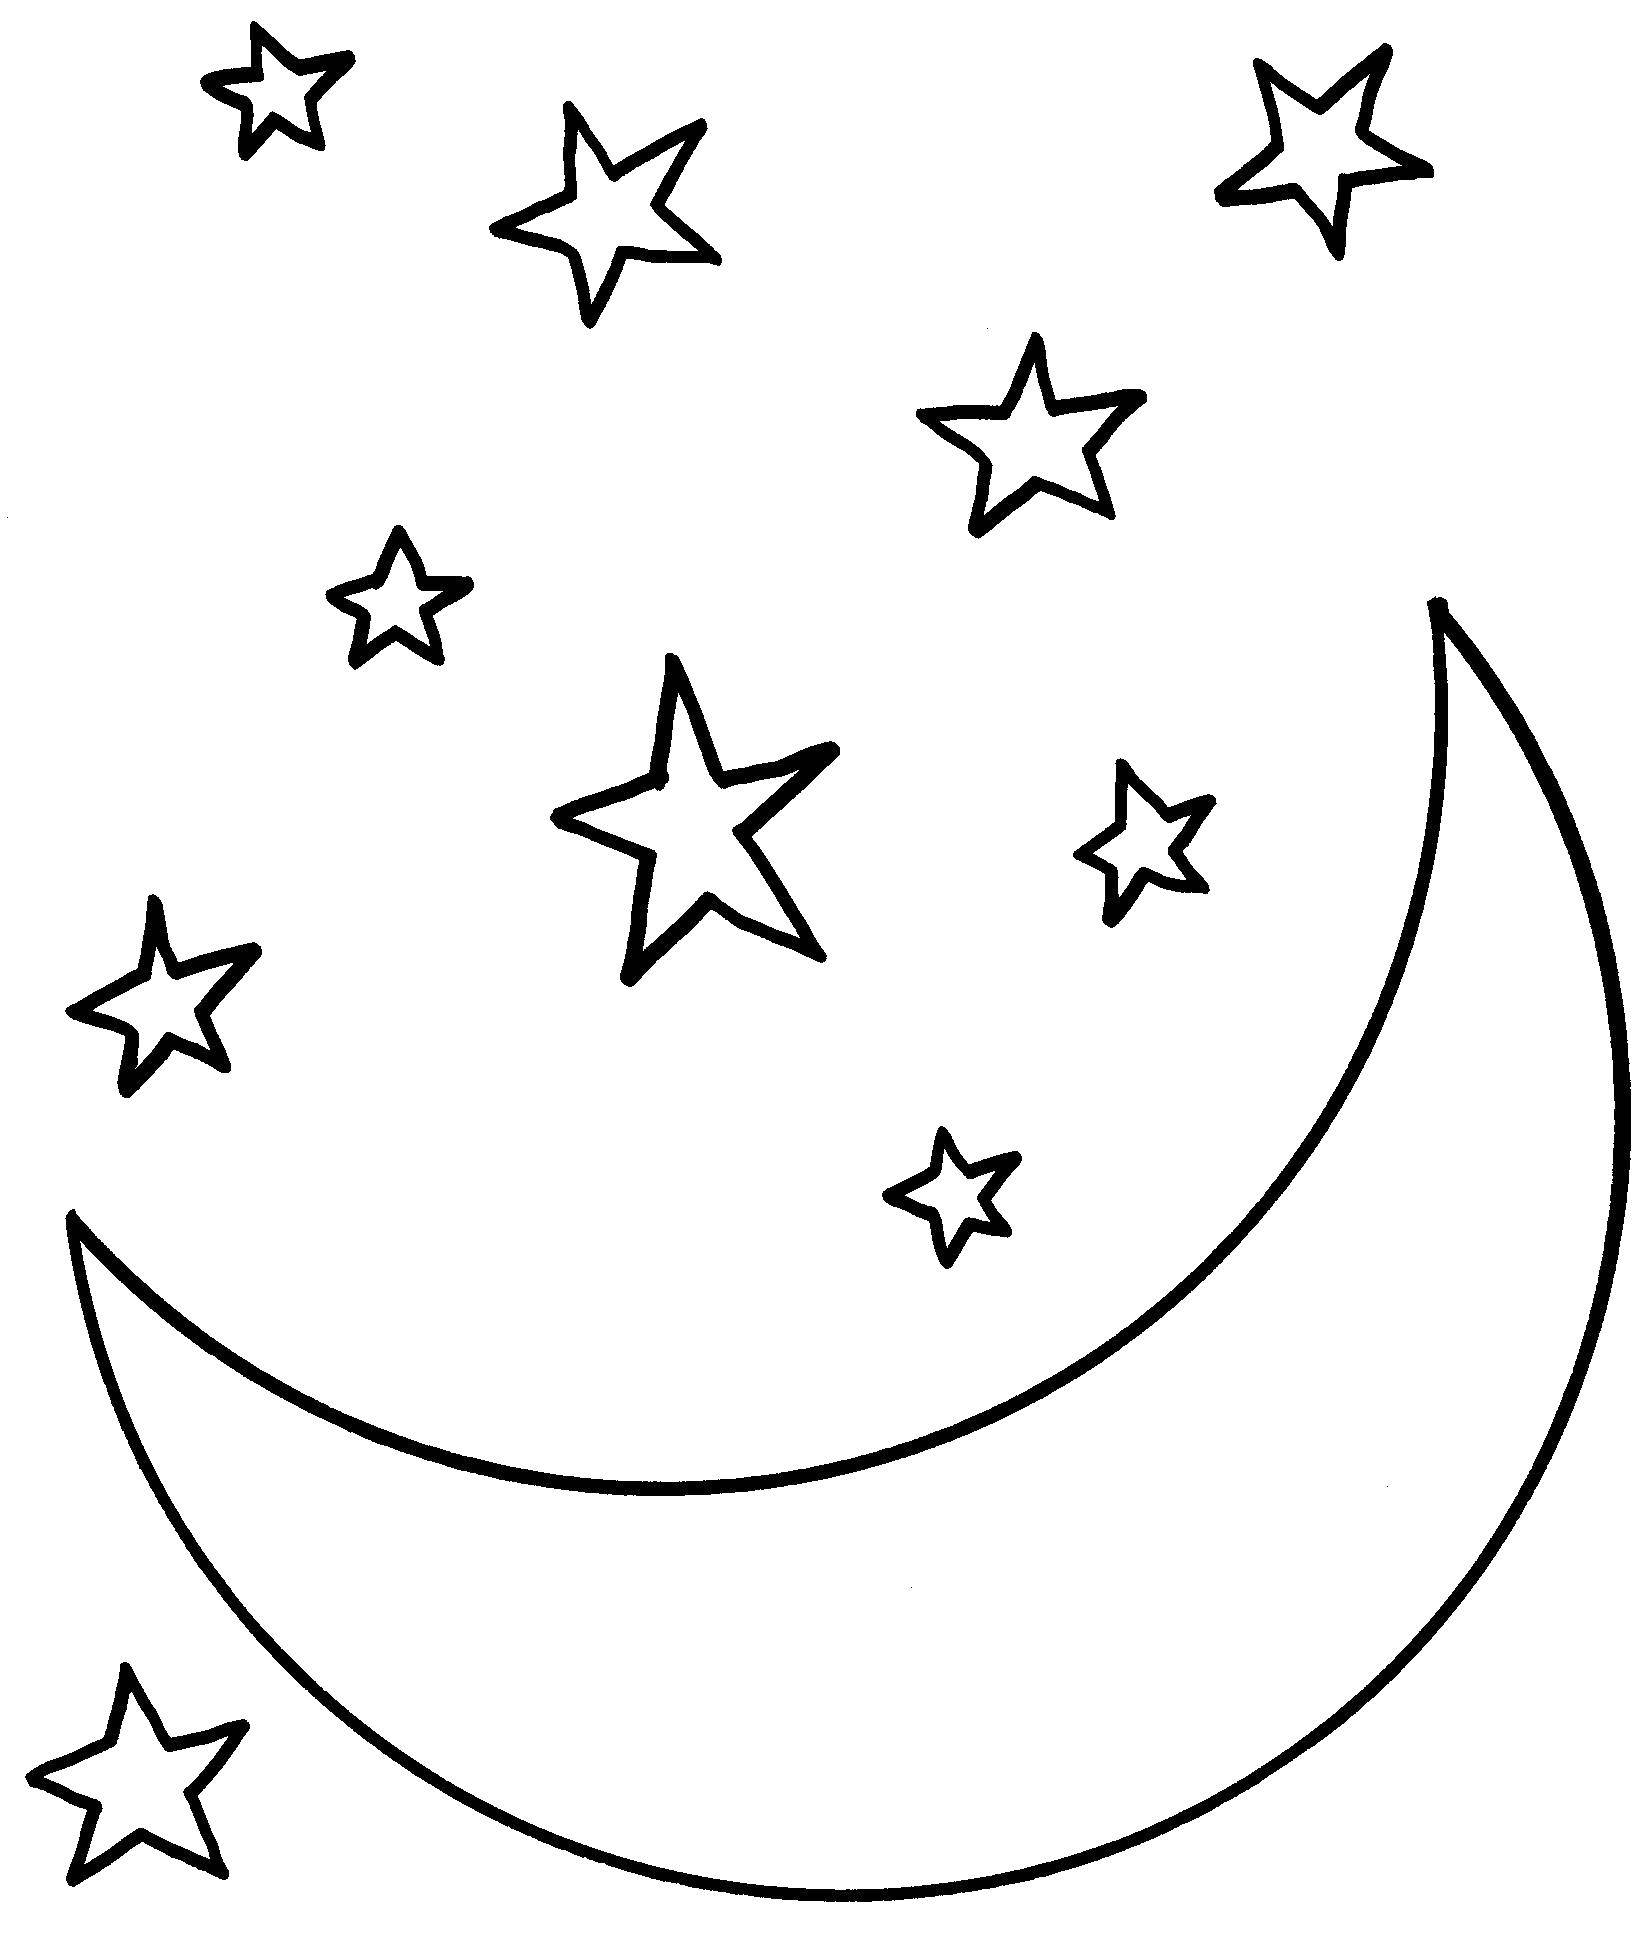 Раскраски ночь, звездопад Раскраски ночь, звездопад, звездное небо, раскраски со звездами для малышей